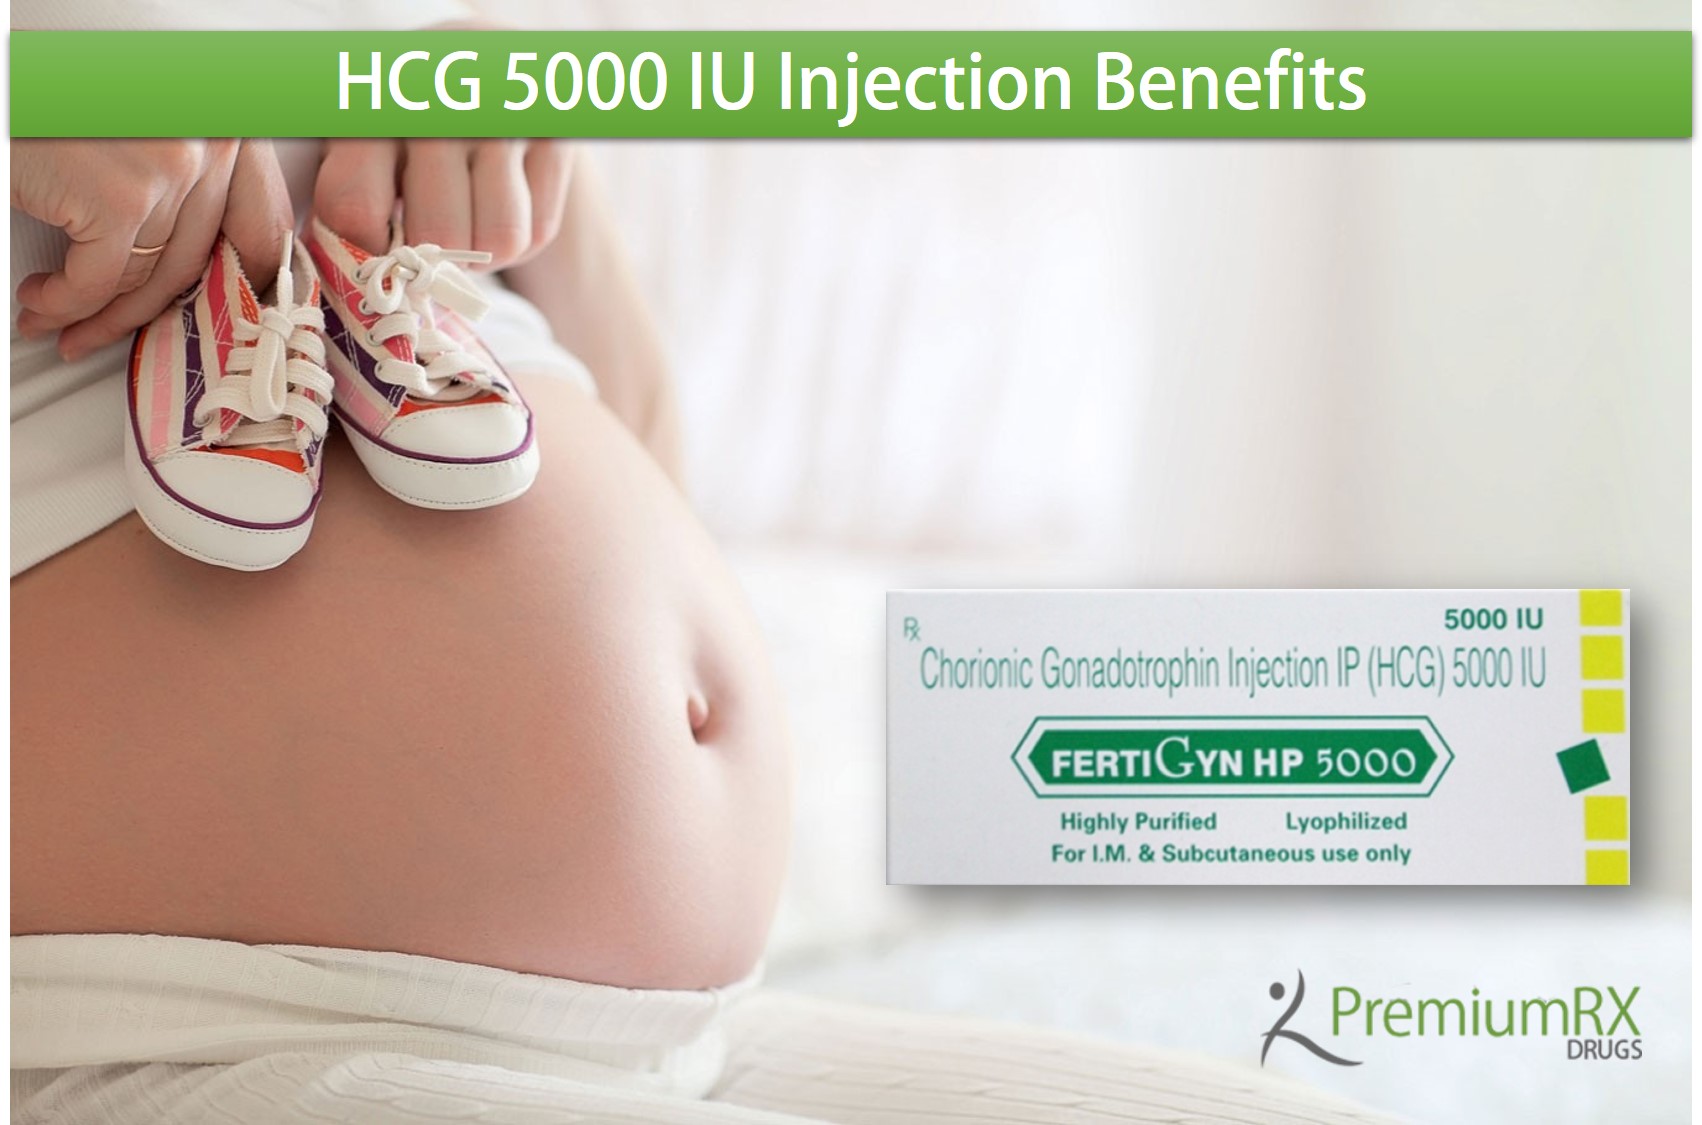 HCG 5000 IU Injection Benefits